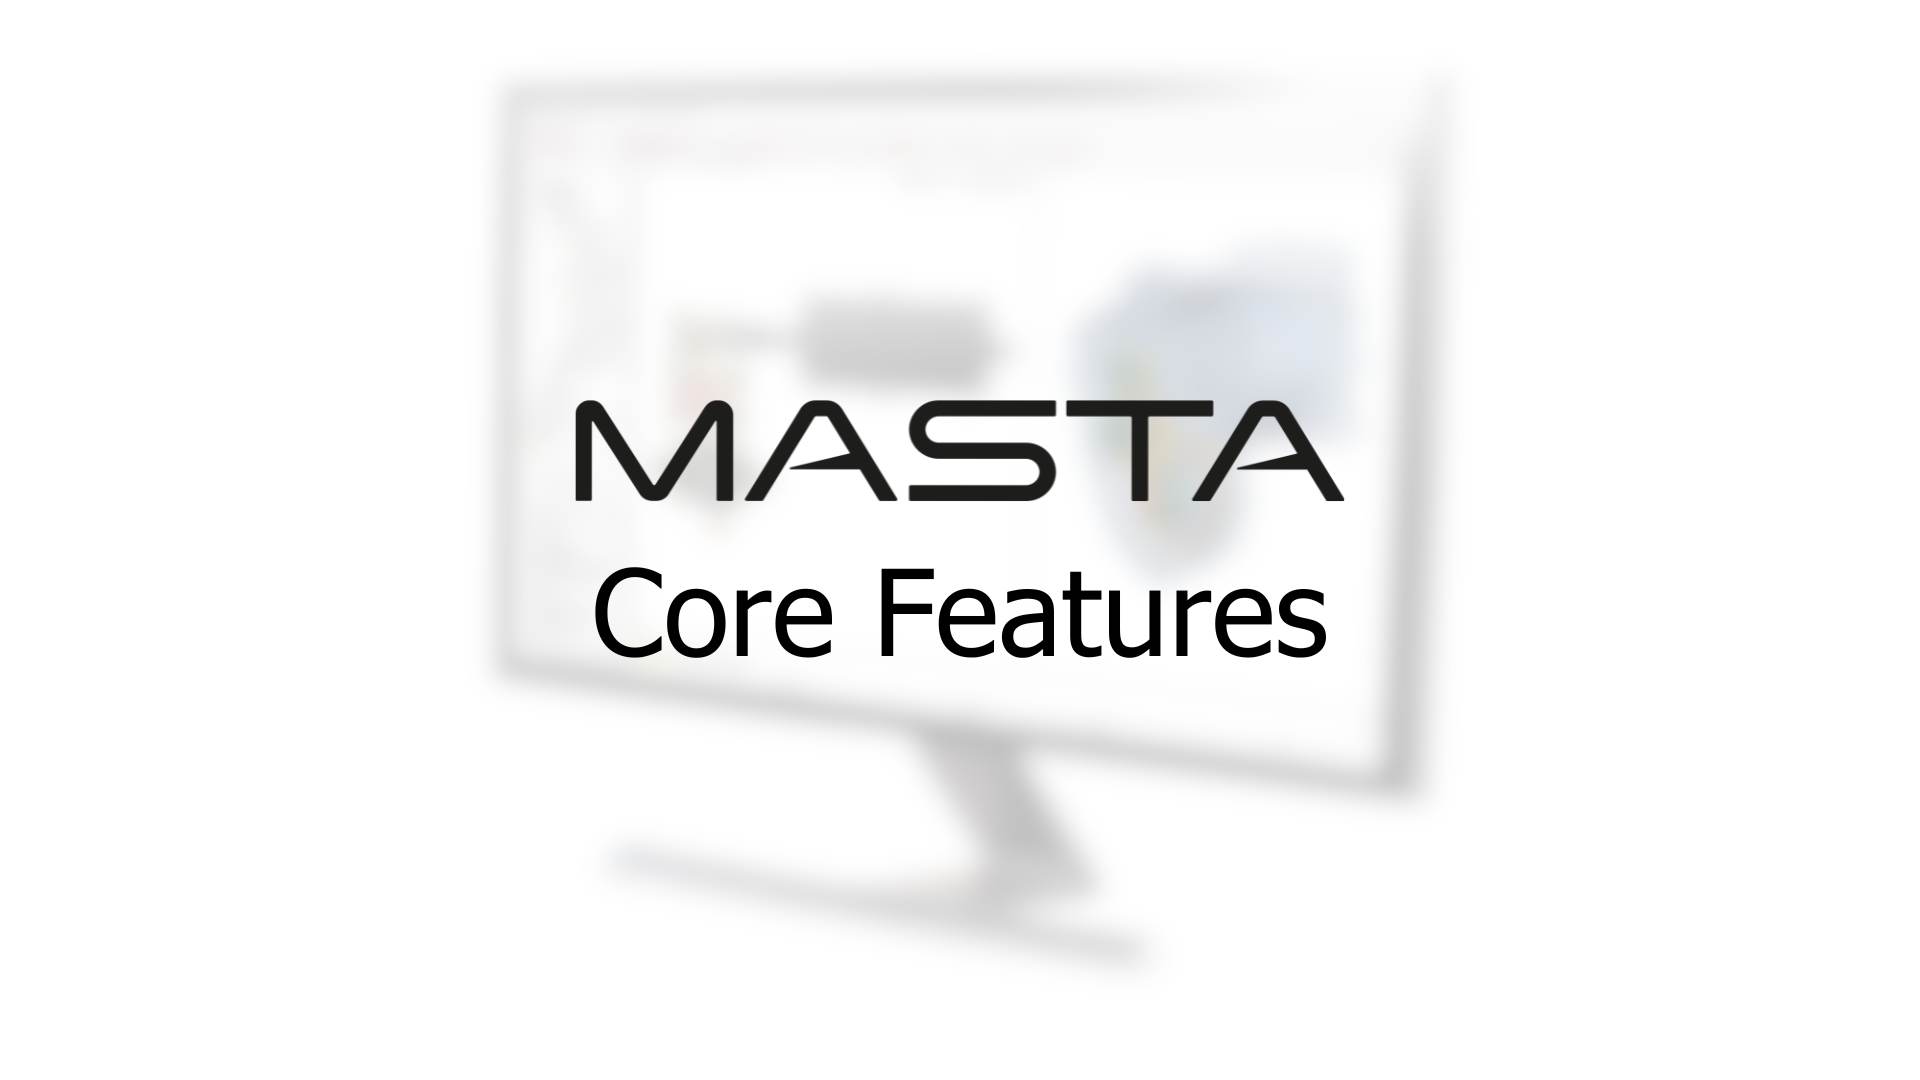 MASTA Core Features.